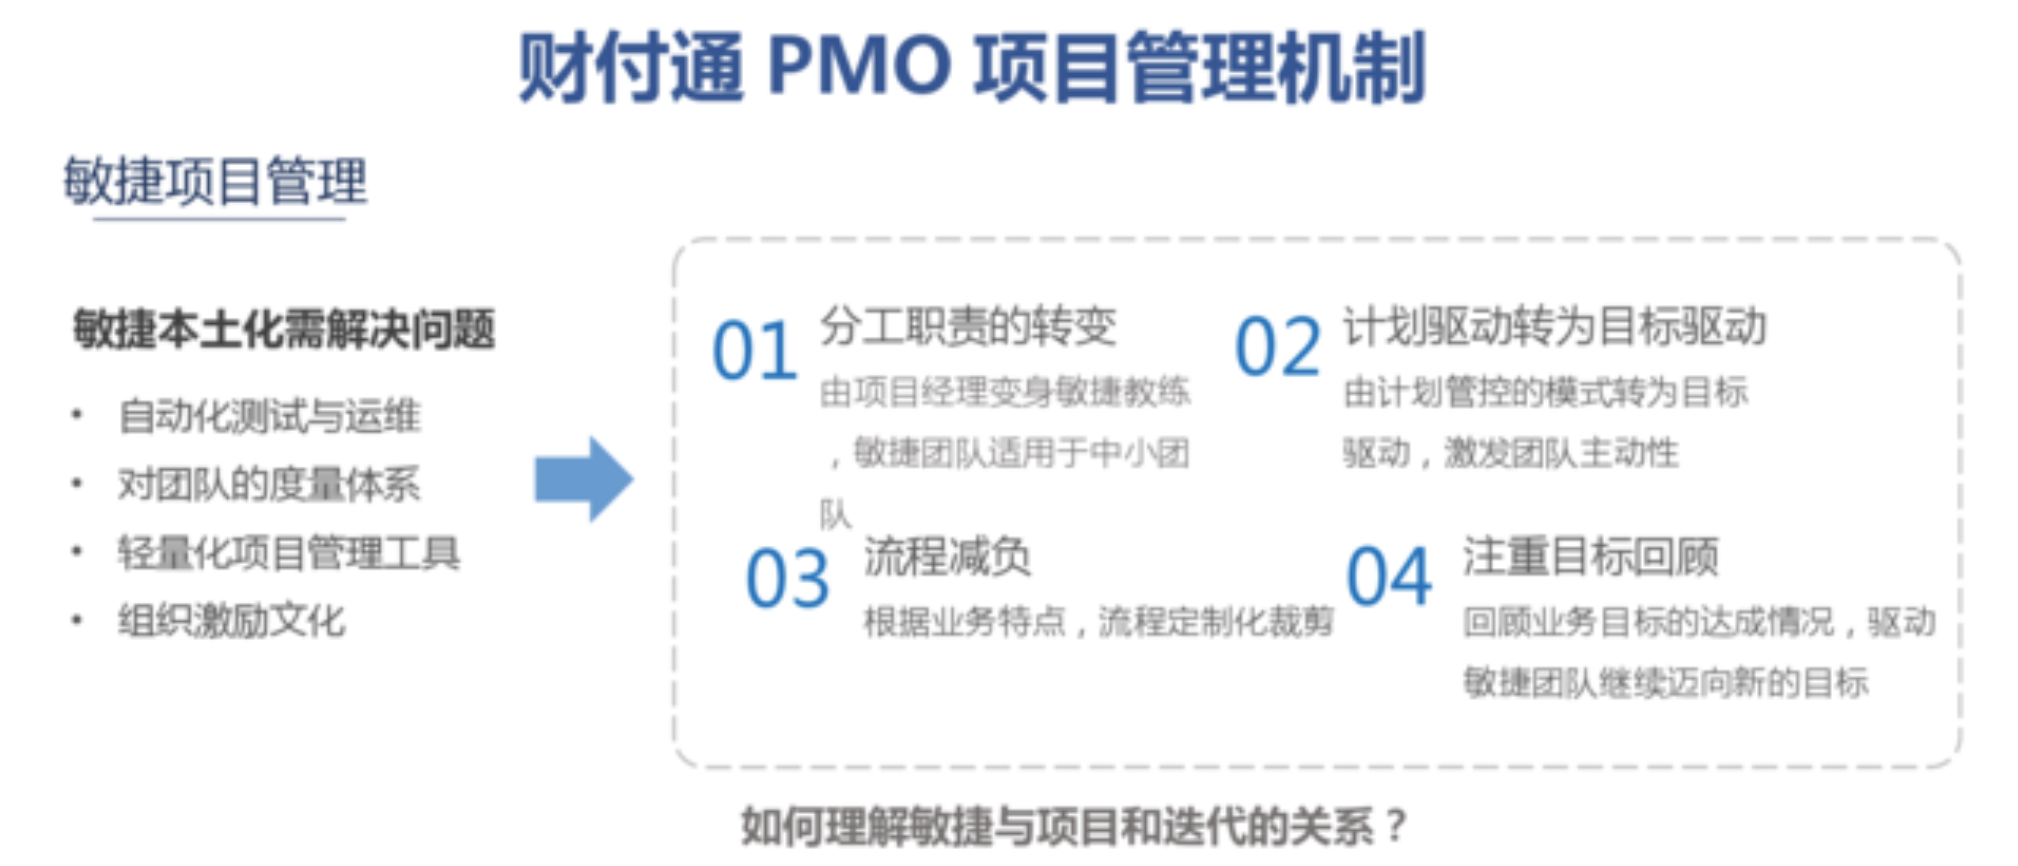 MPD：财付通——标准化项目管理与敏捷迭代的兼得——互联网PMO与项目管理实践  项目管理 管理 产品经理 产品 第5张